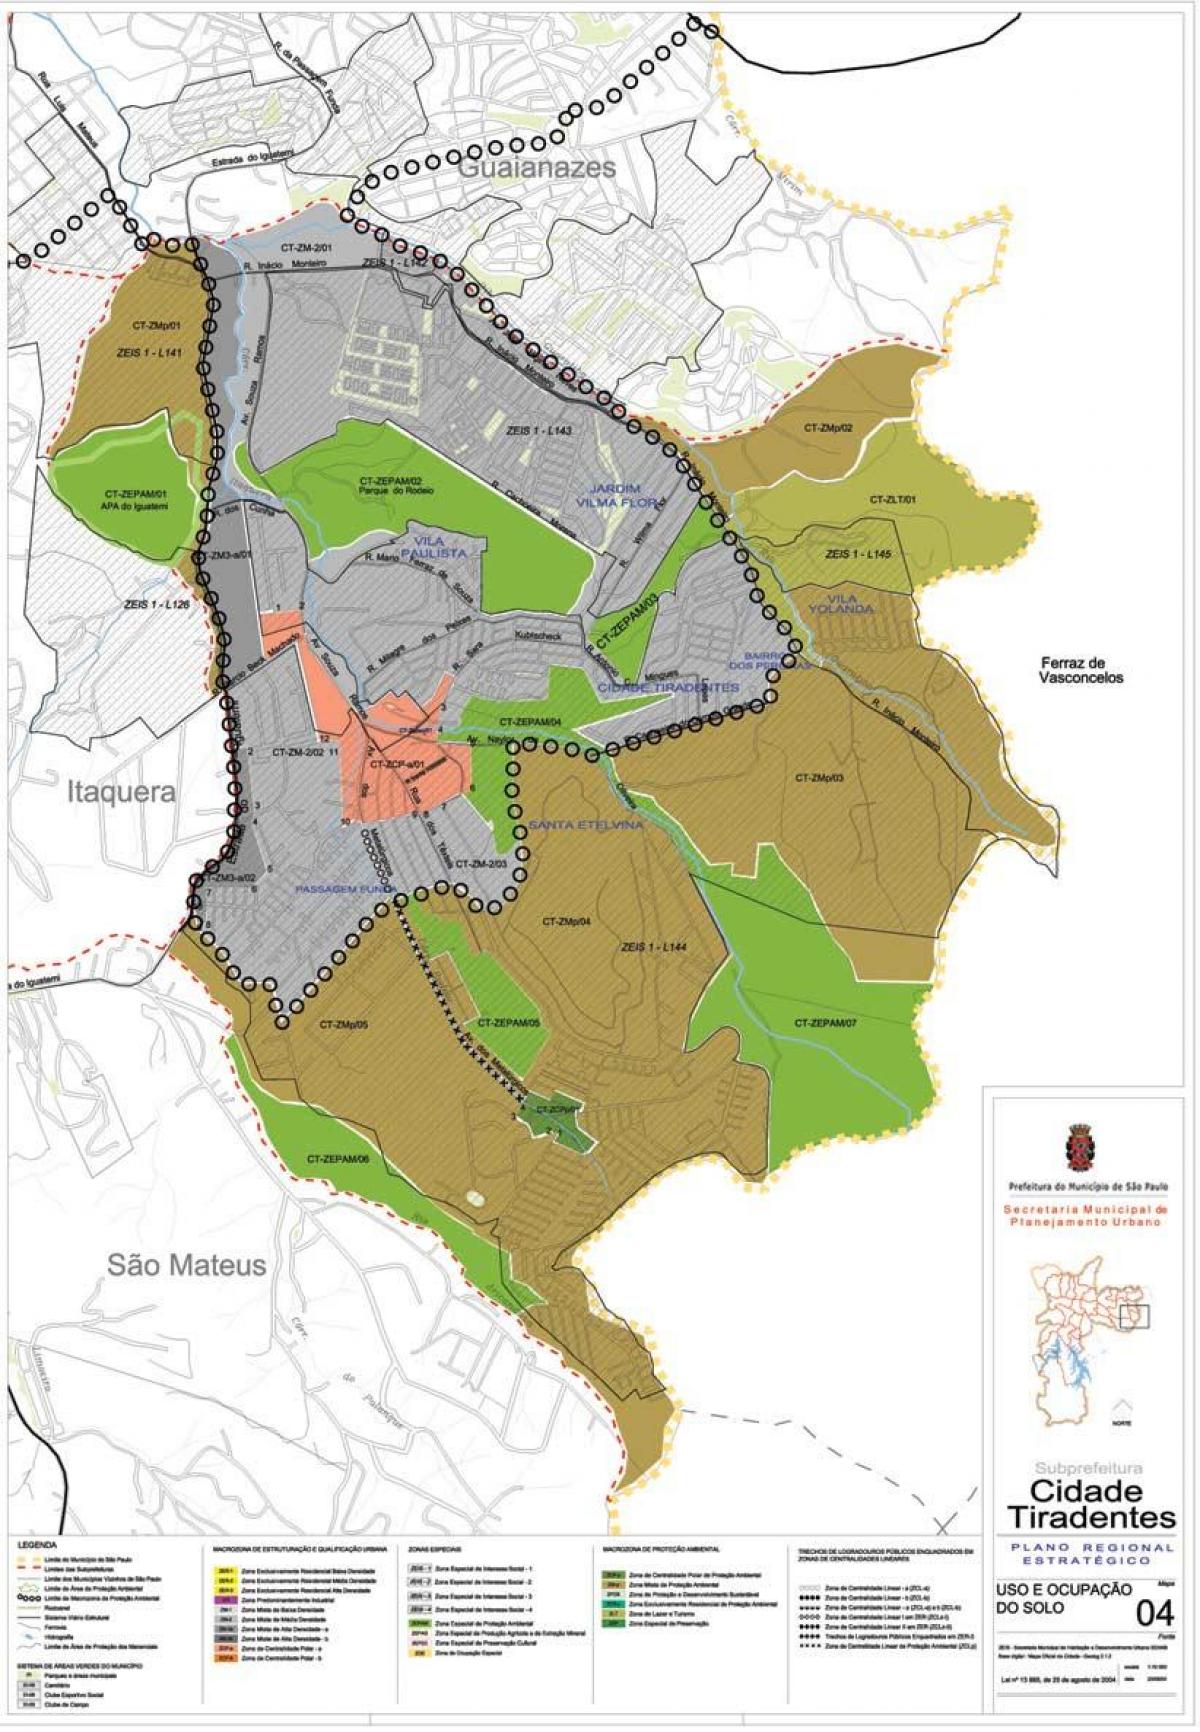 Karte von Cidade Tiradentes-São Paulo - Besetzung der Erde